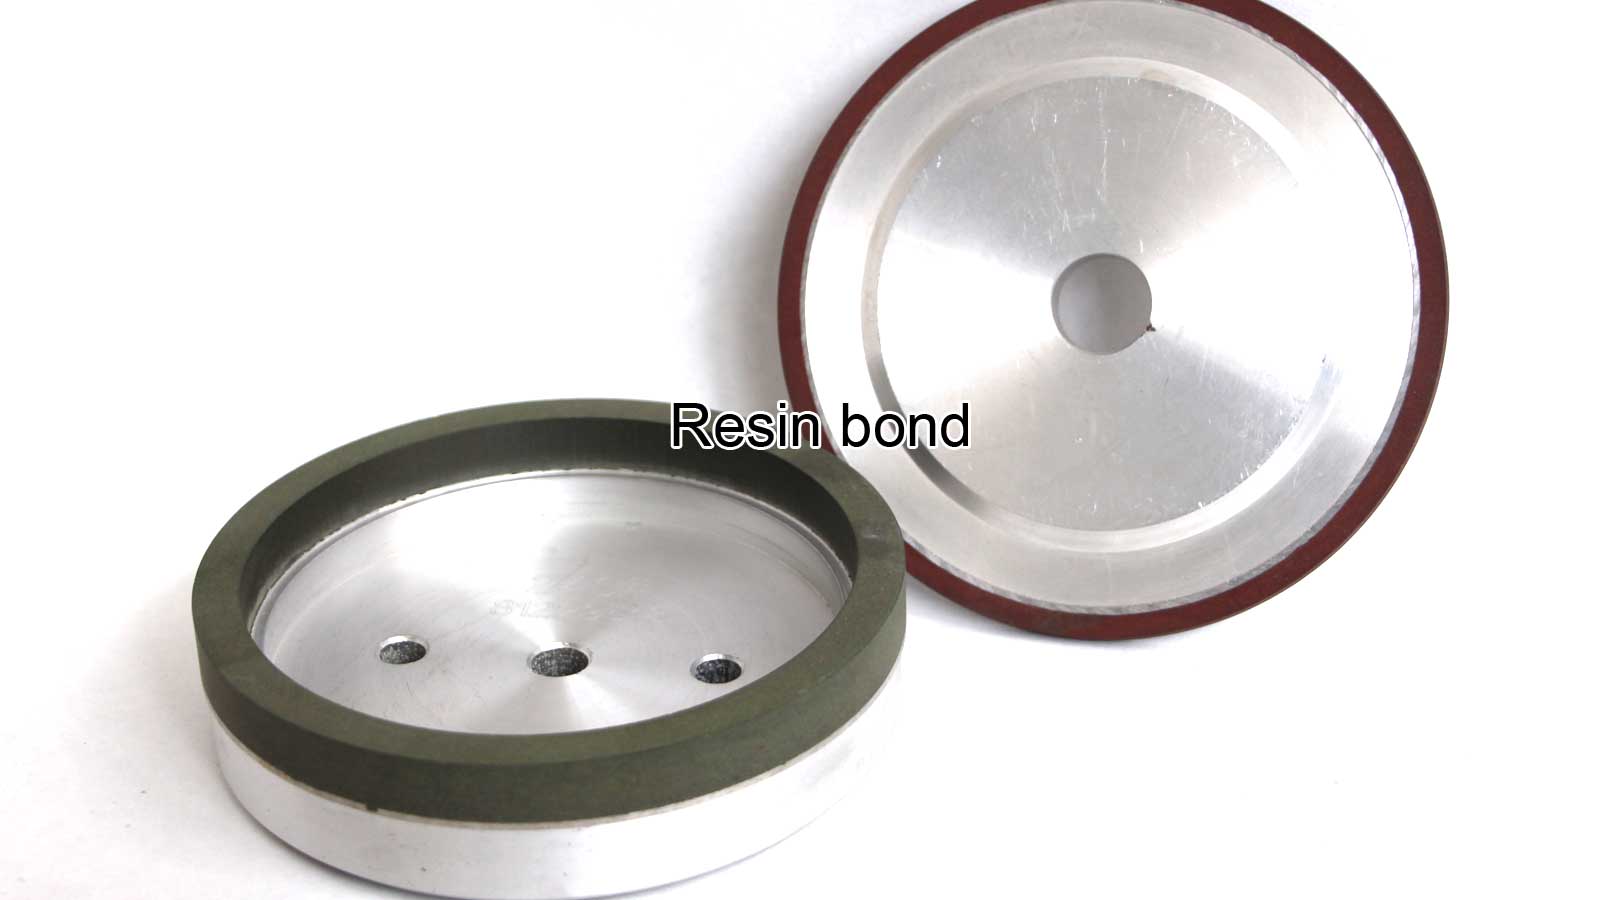 Resin-bond super abrasive wheels